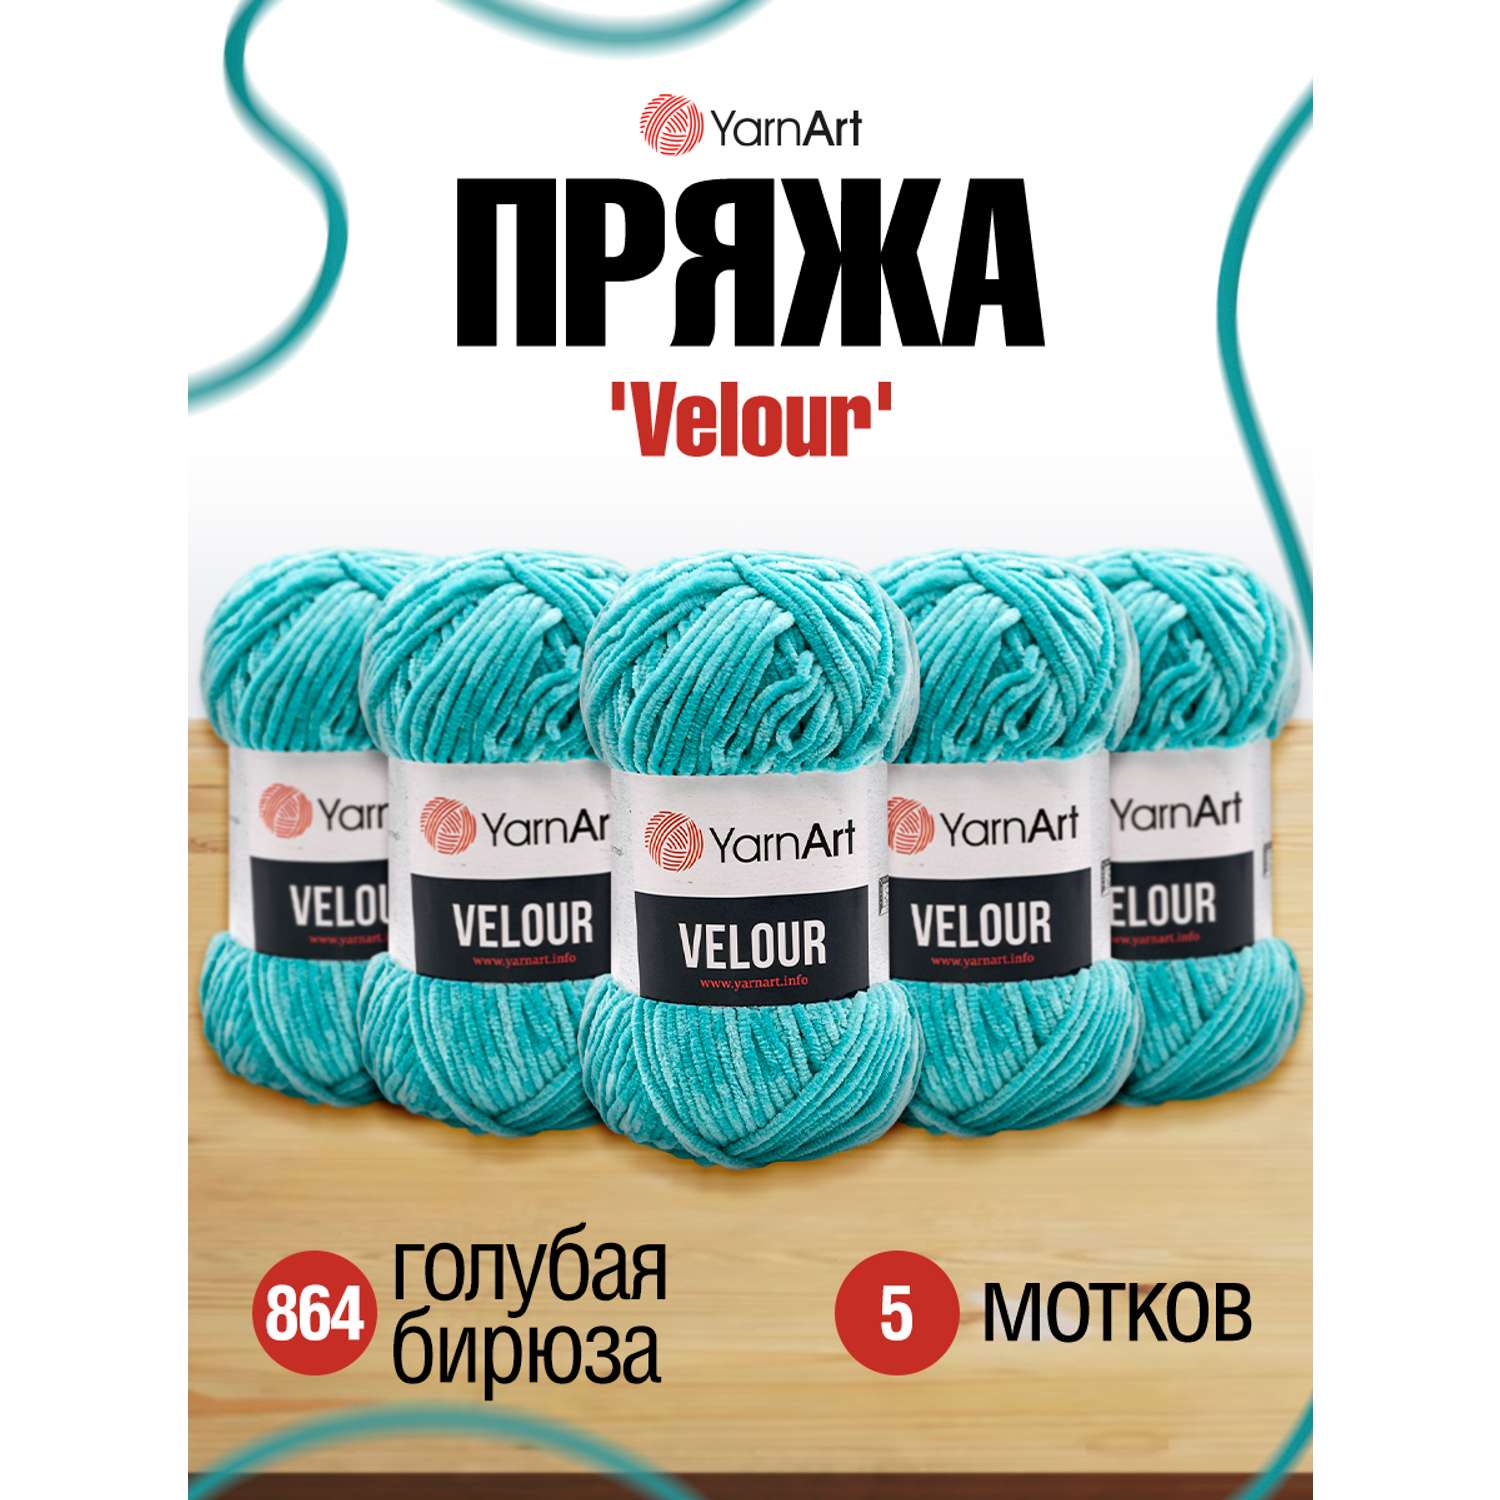 Пряжа для вязания YarnArt Velour 100 г 170 м микрополиэстер мягкая велюровая 5 мотков 864 голубая бирюза - фото 1